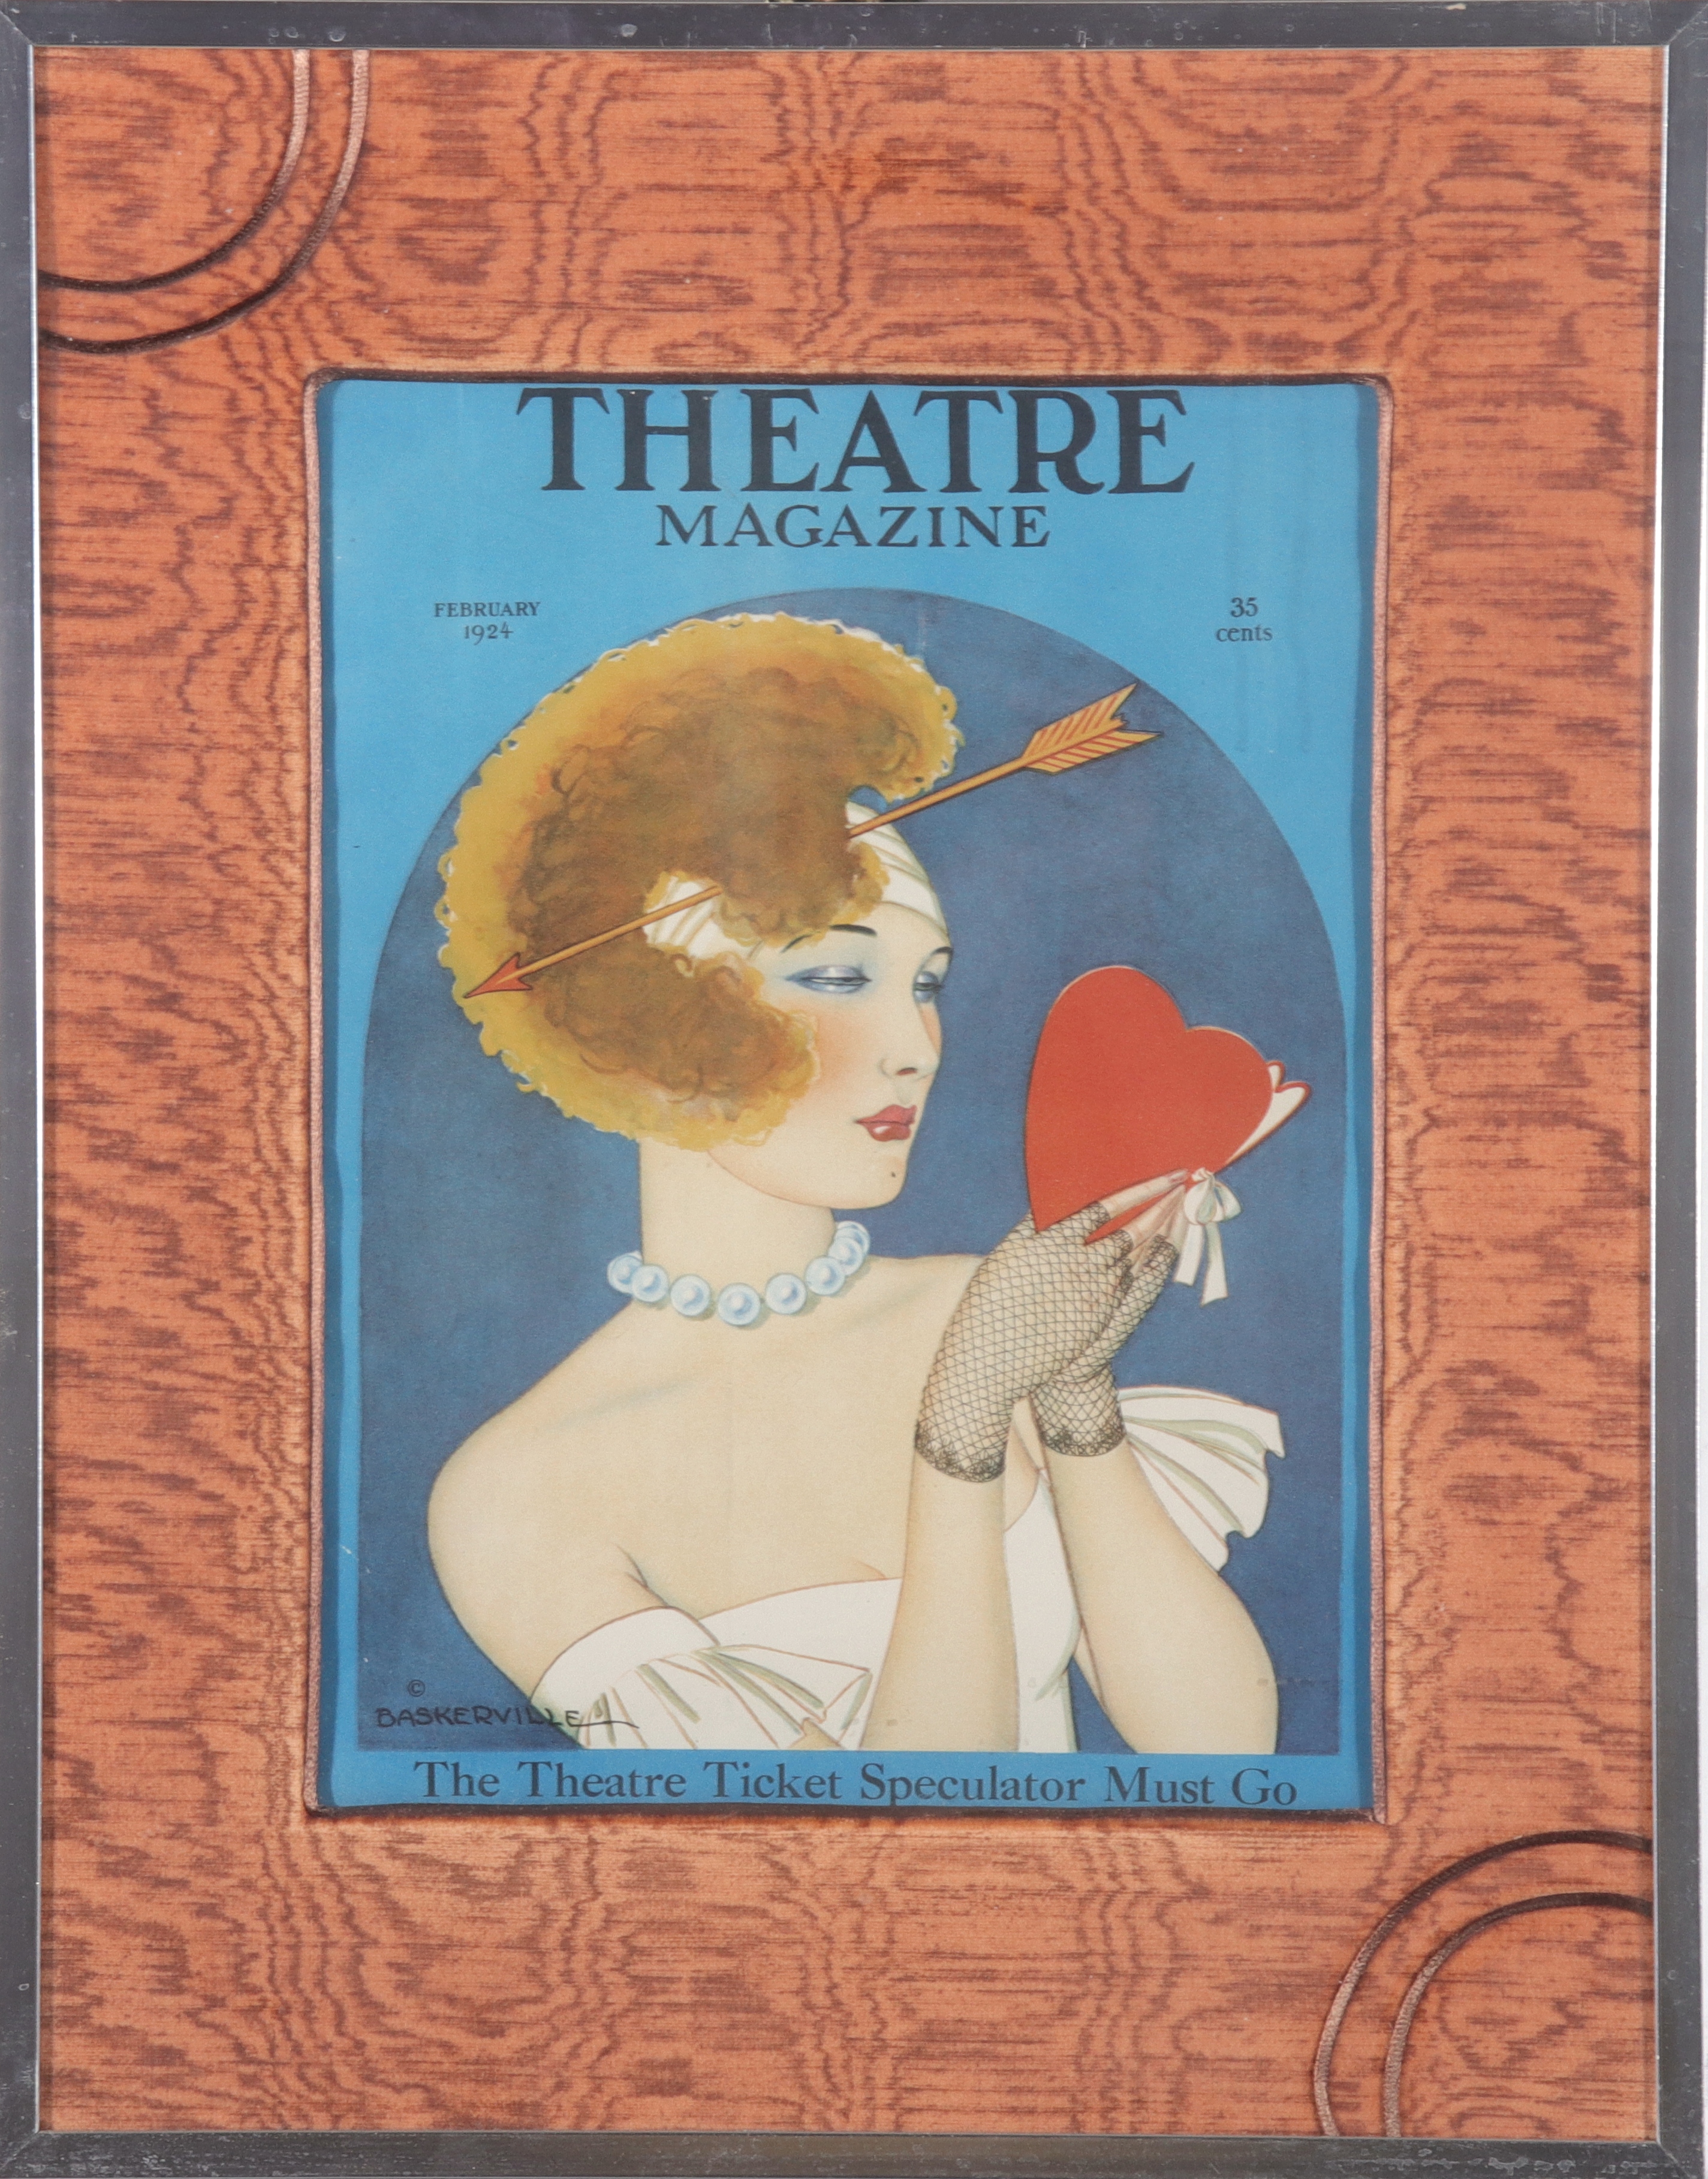 THEATRE MAGAZINE FEB 1924 COVER 3c445f